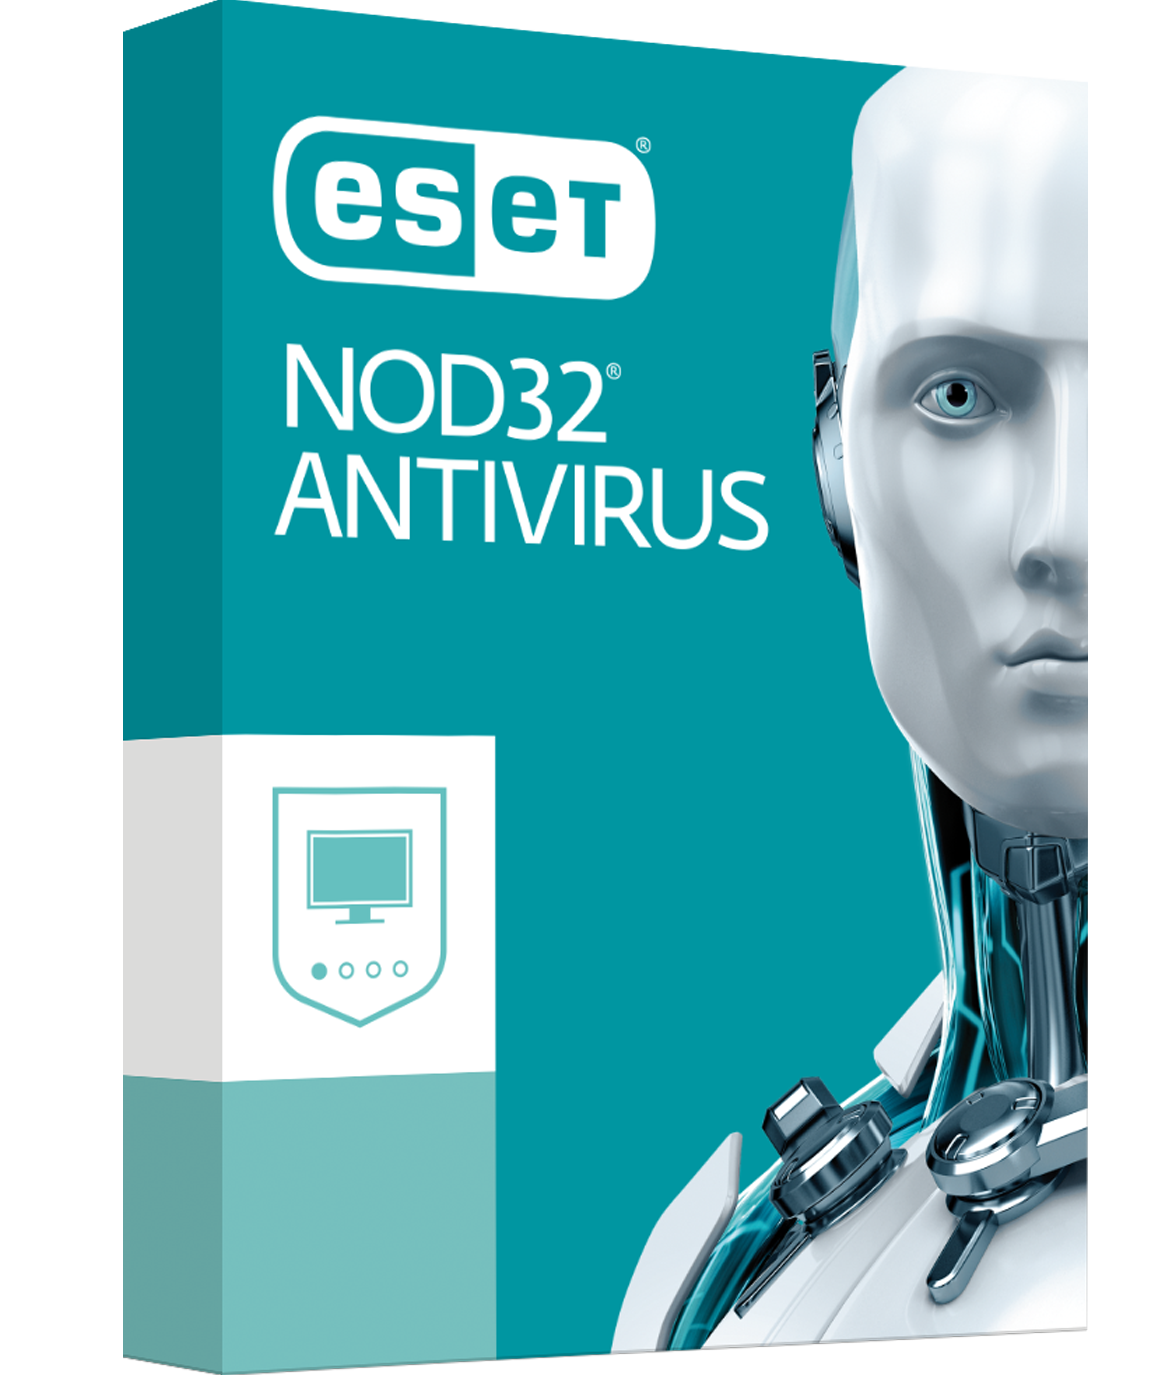 آنتی ویروس نود۳۲ برای کامپیوتر